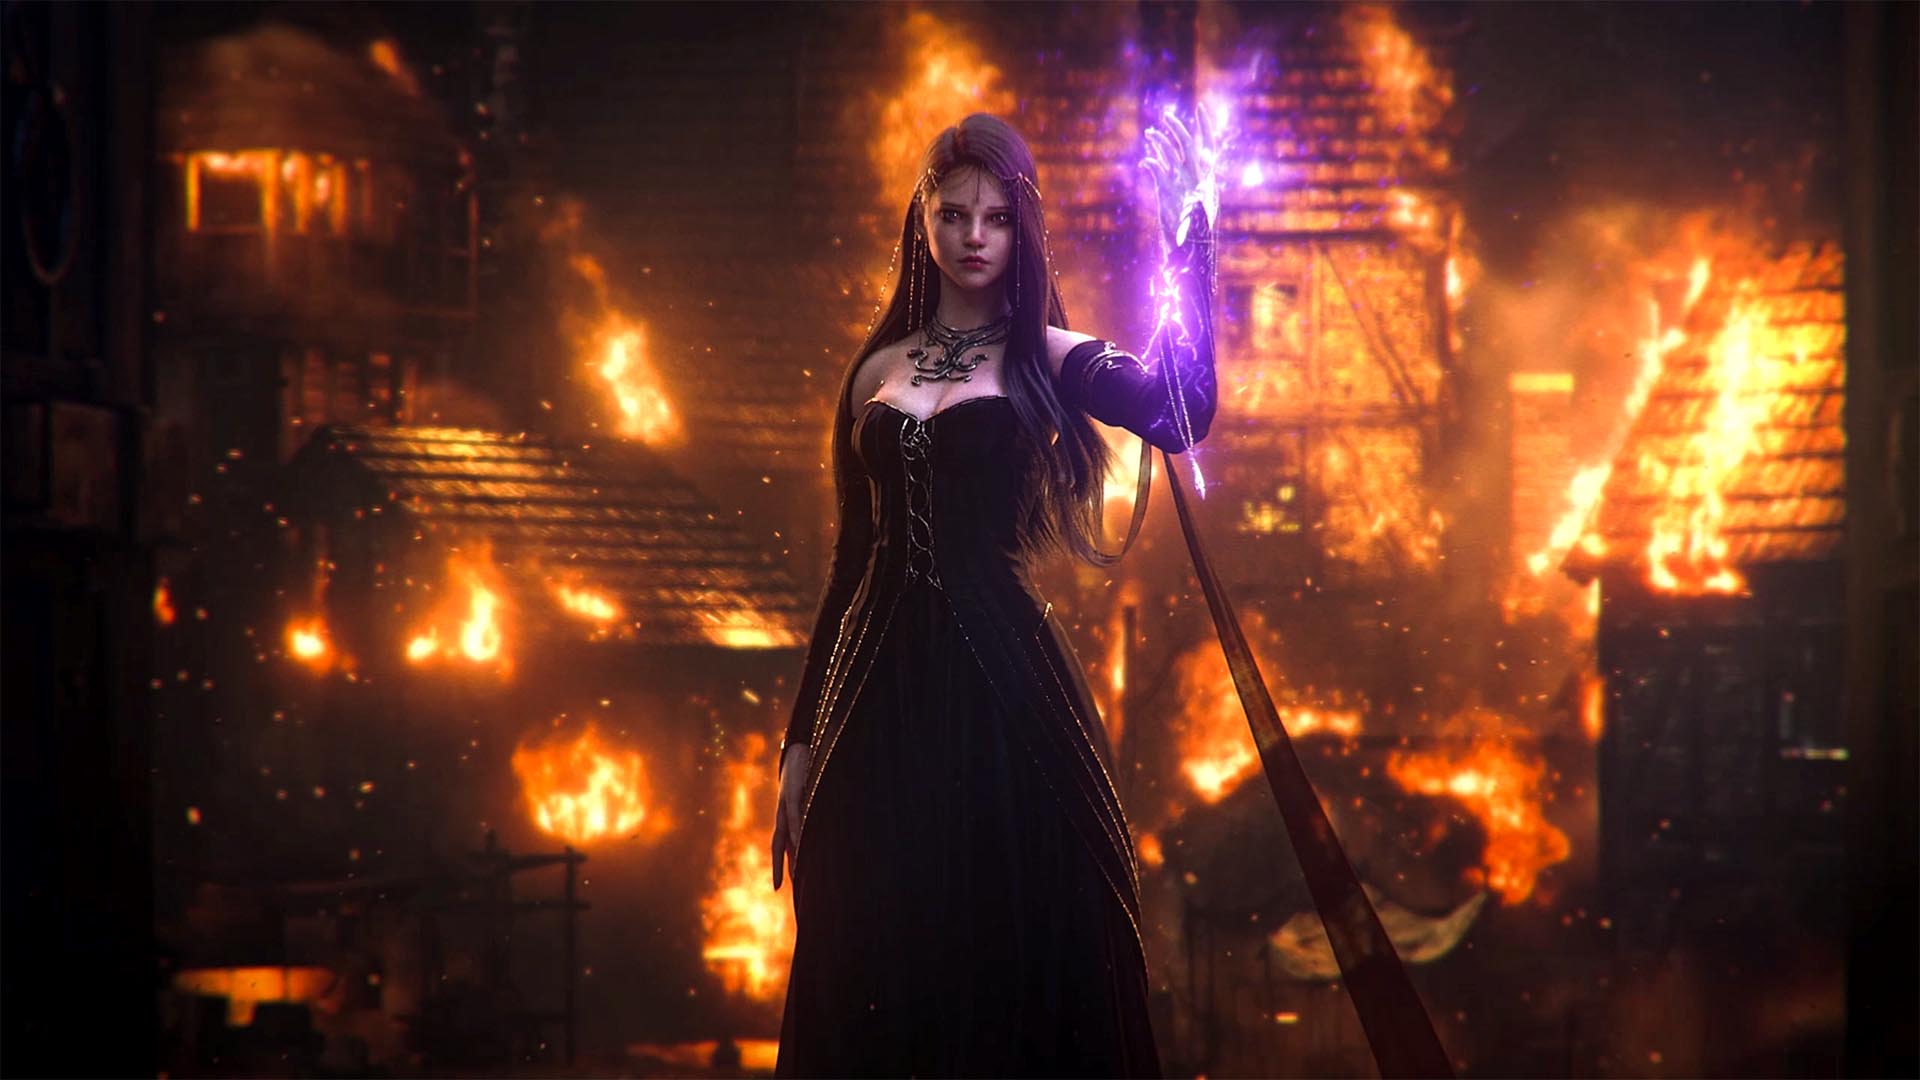 黒いドレスに長い黒髪、手から紫色の光を放ち、背後には町が燃えている状態で立っているカランシア